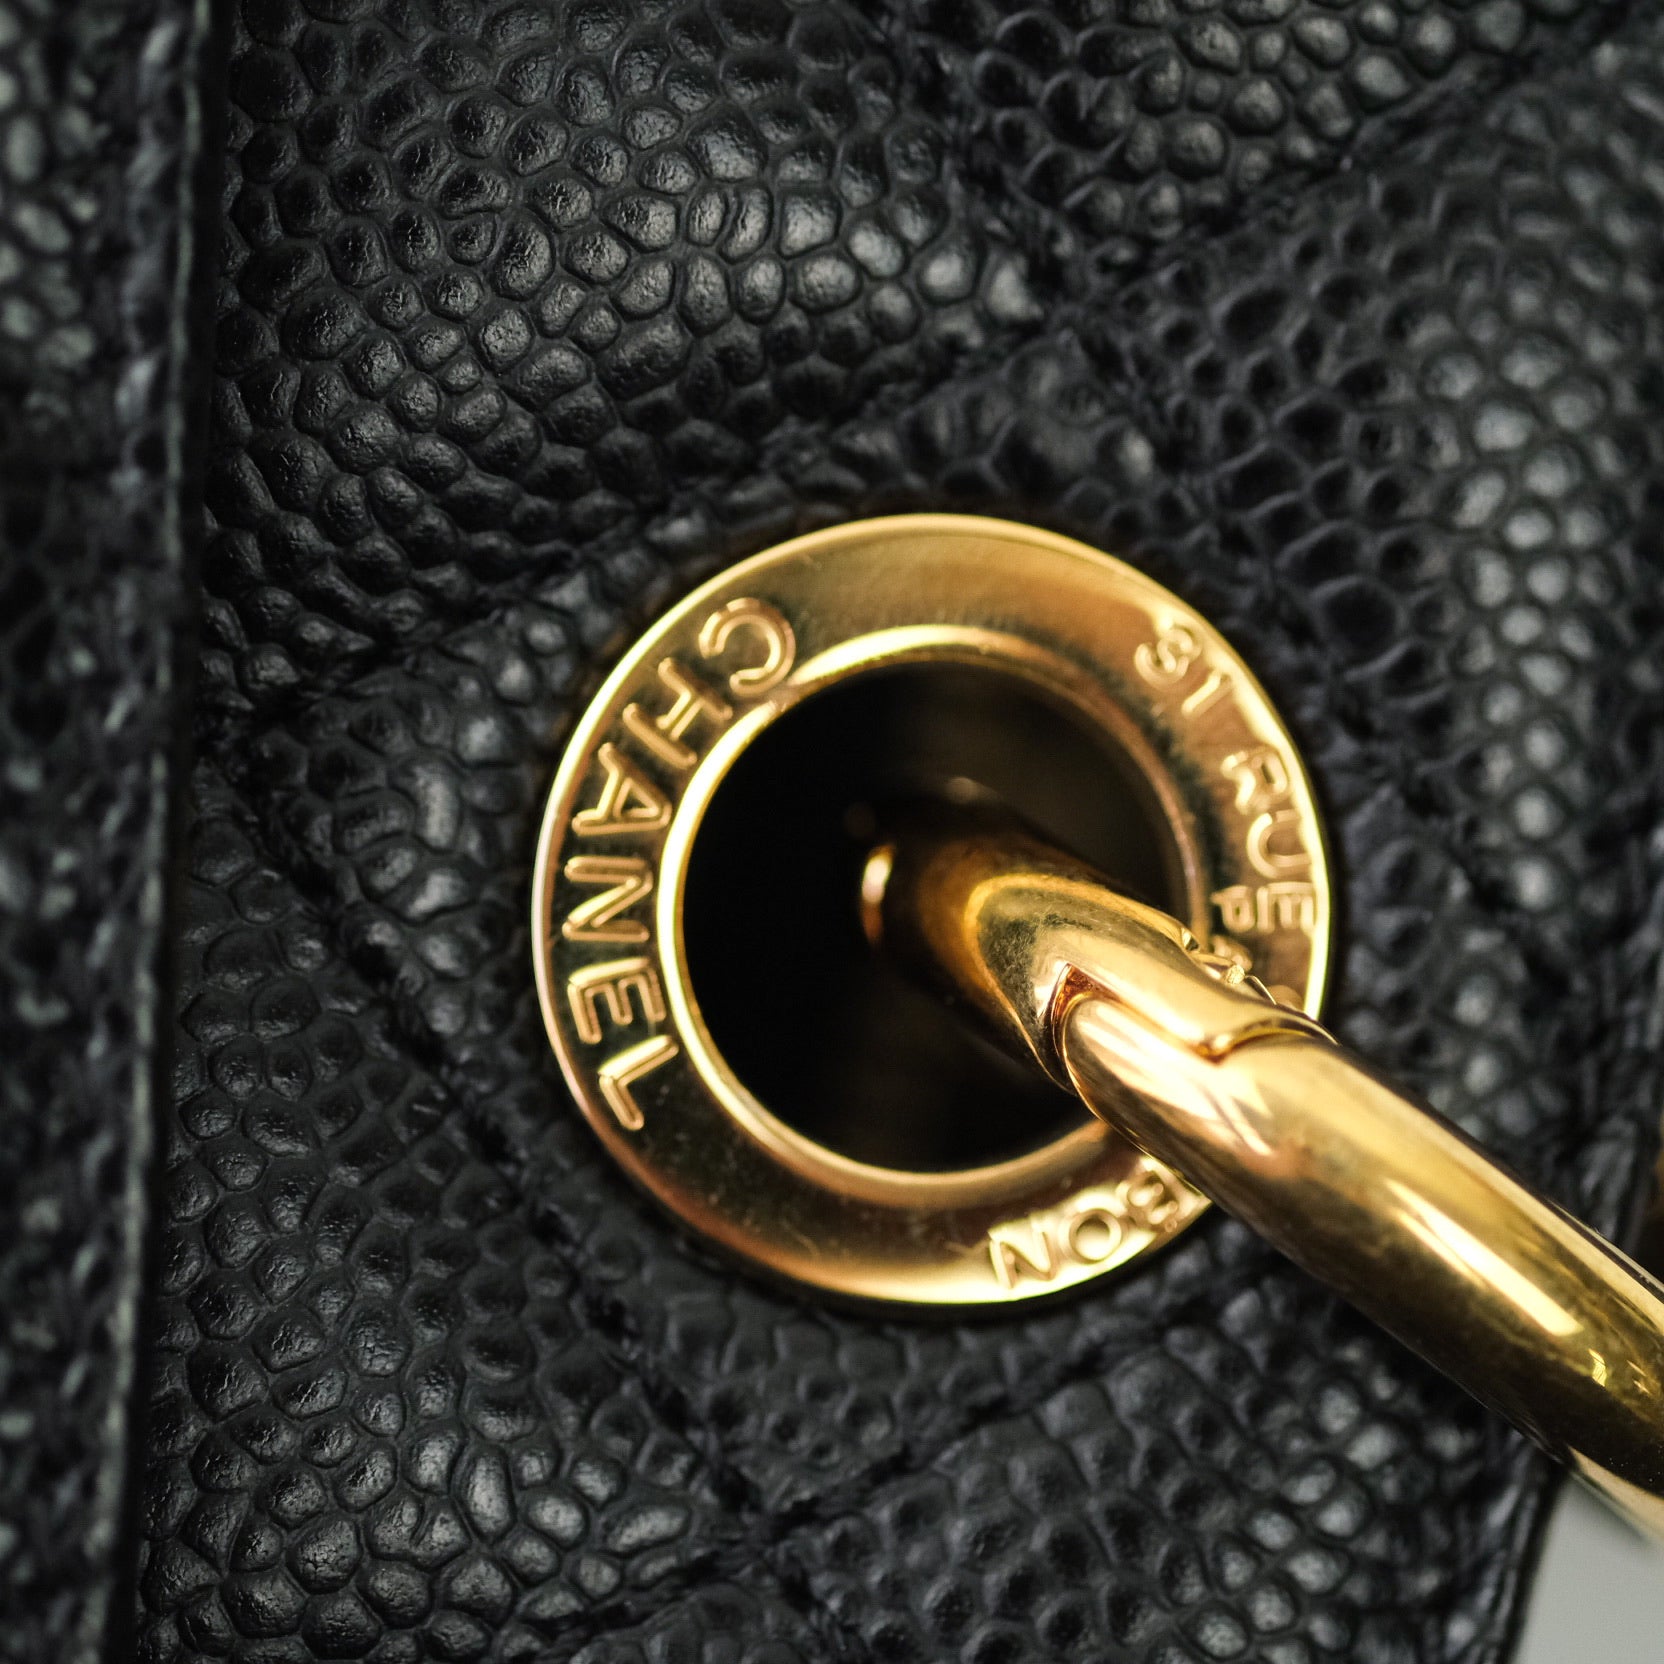 Chanel Star Coco Beach Bag Black Raffia Aged Gold Hardware